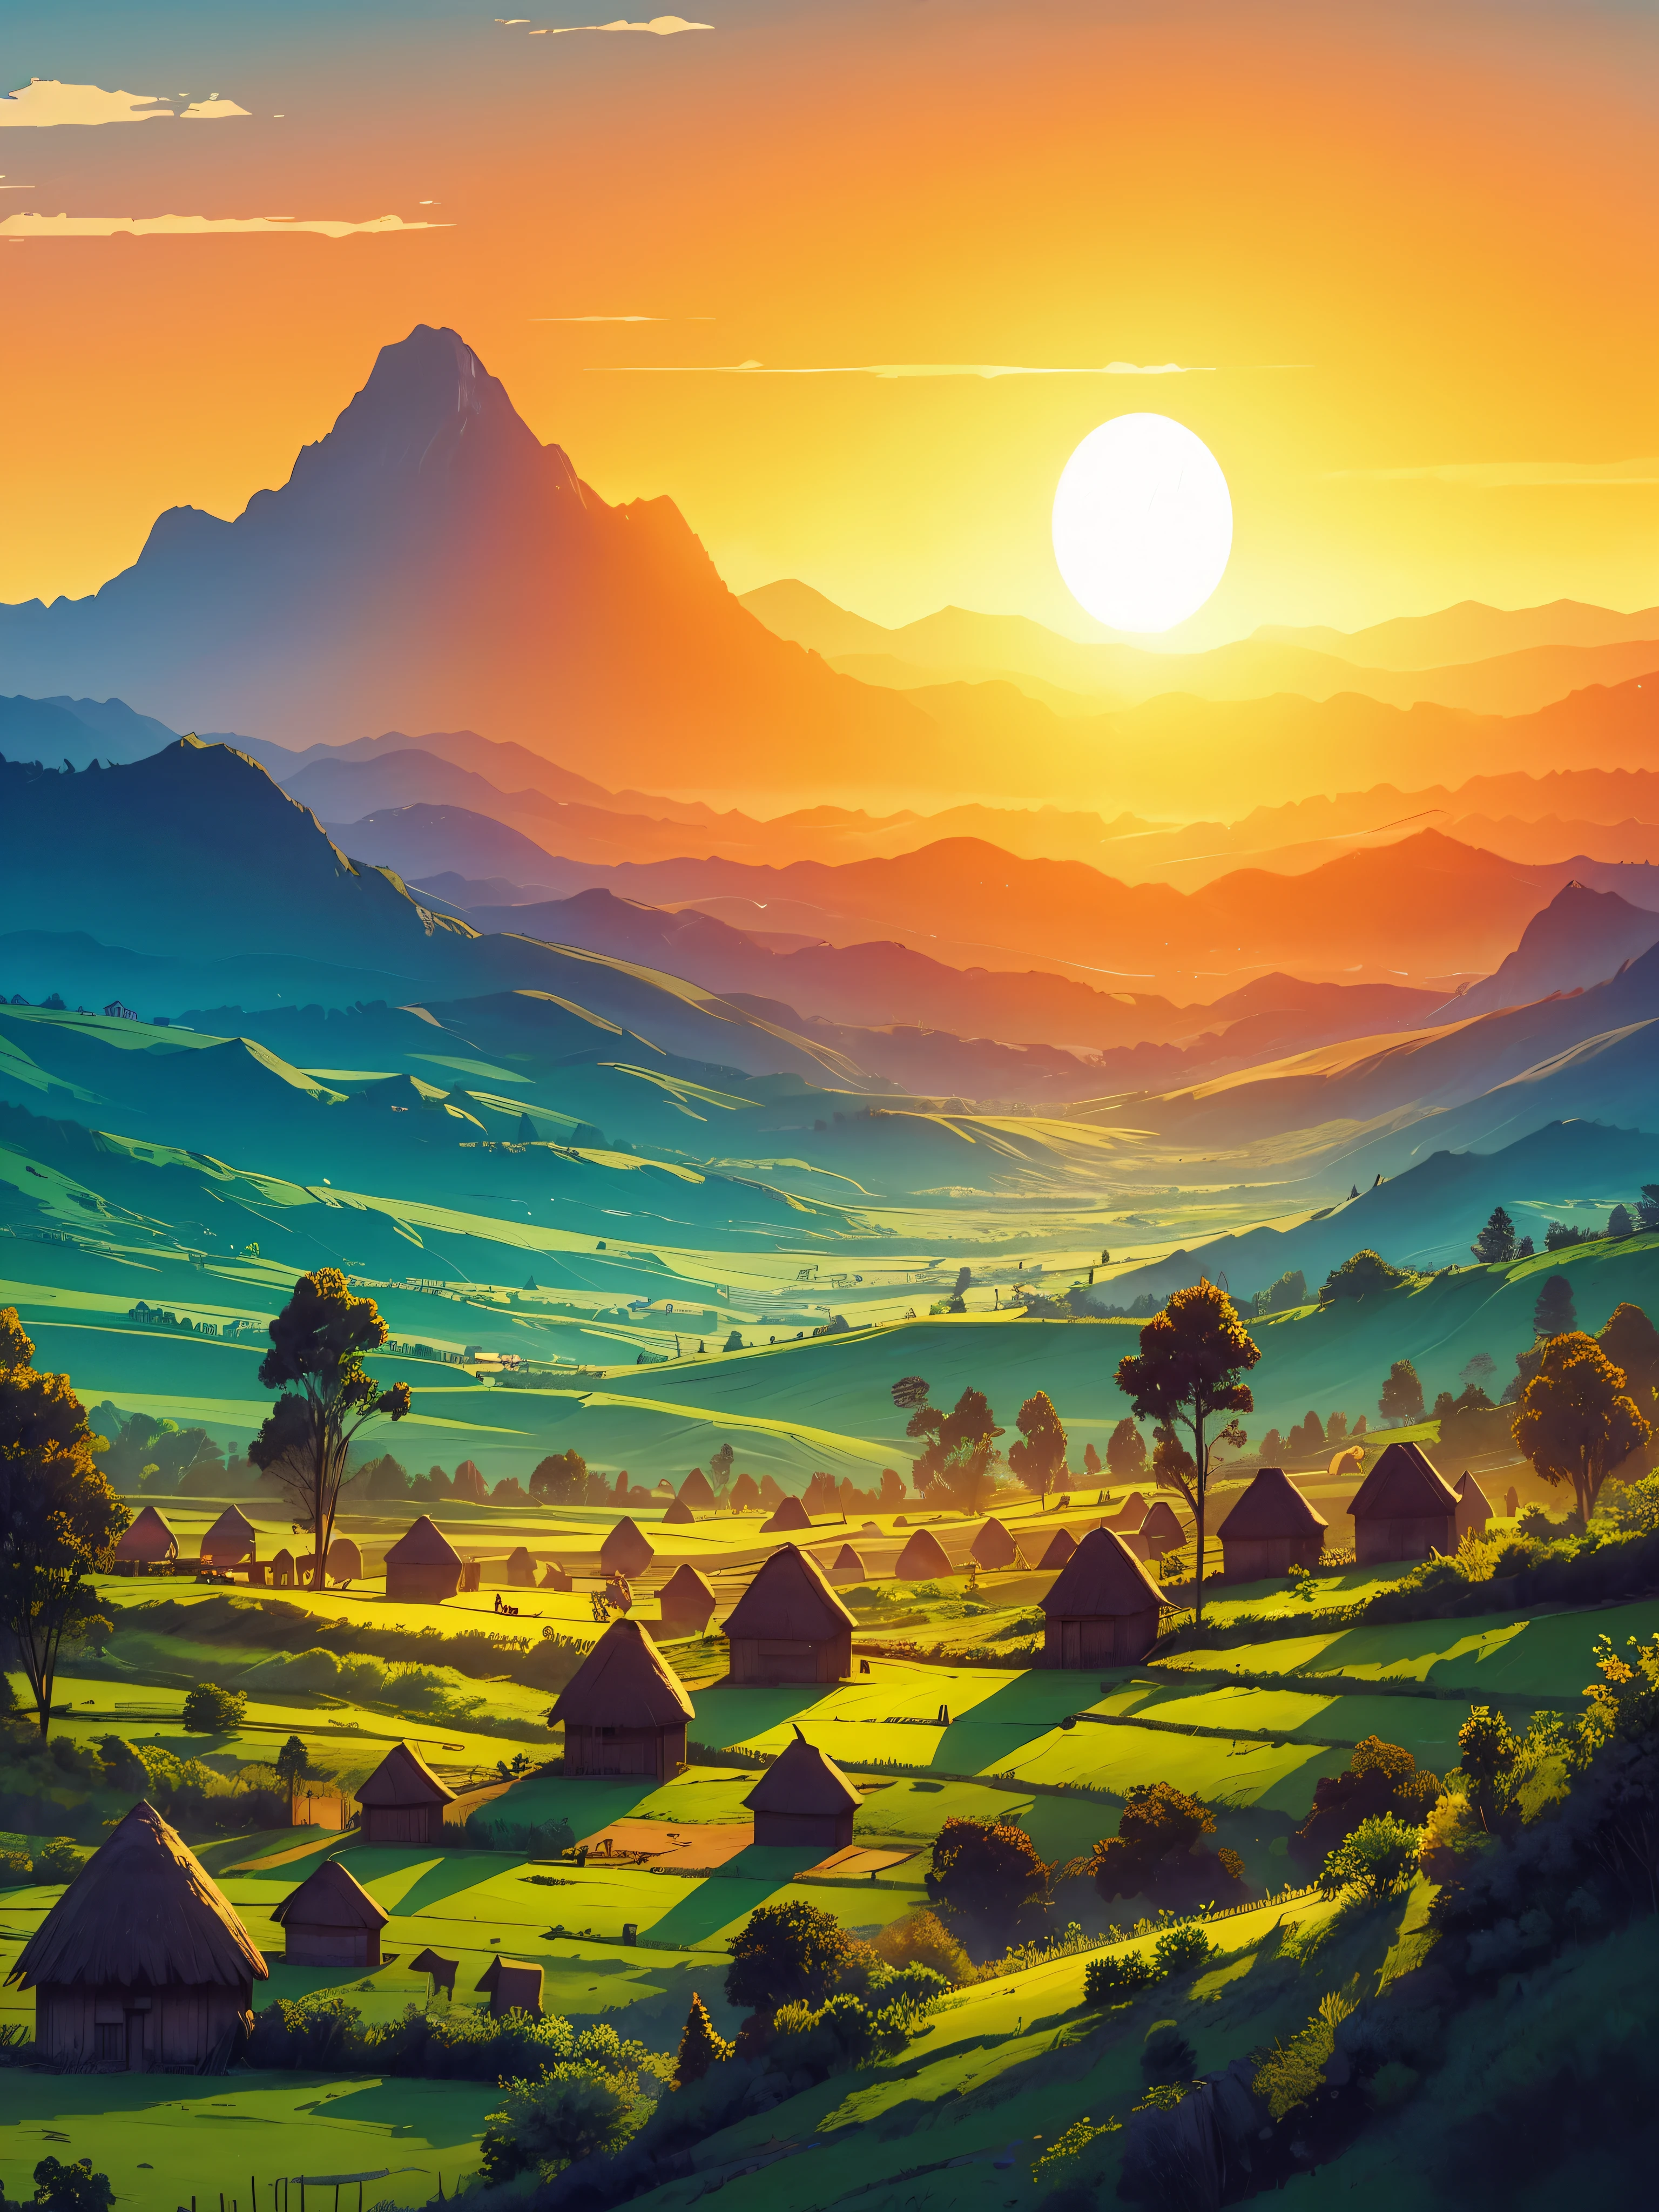 Dessinez une scène artistique aérienne simple et animée numérique d&#39;un coucher de soleil éthiopien, un vaste paysage se dévoile, mélangeant des champs verdoyants et des montagnes majestueuses. Des cabanes traditionnelles parsèment la scène, alors que le soleil déclinant baigne le panorama de teintes chaudes, pas d&#39;humains ni de bétail, des tons de couleurs vibrants